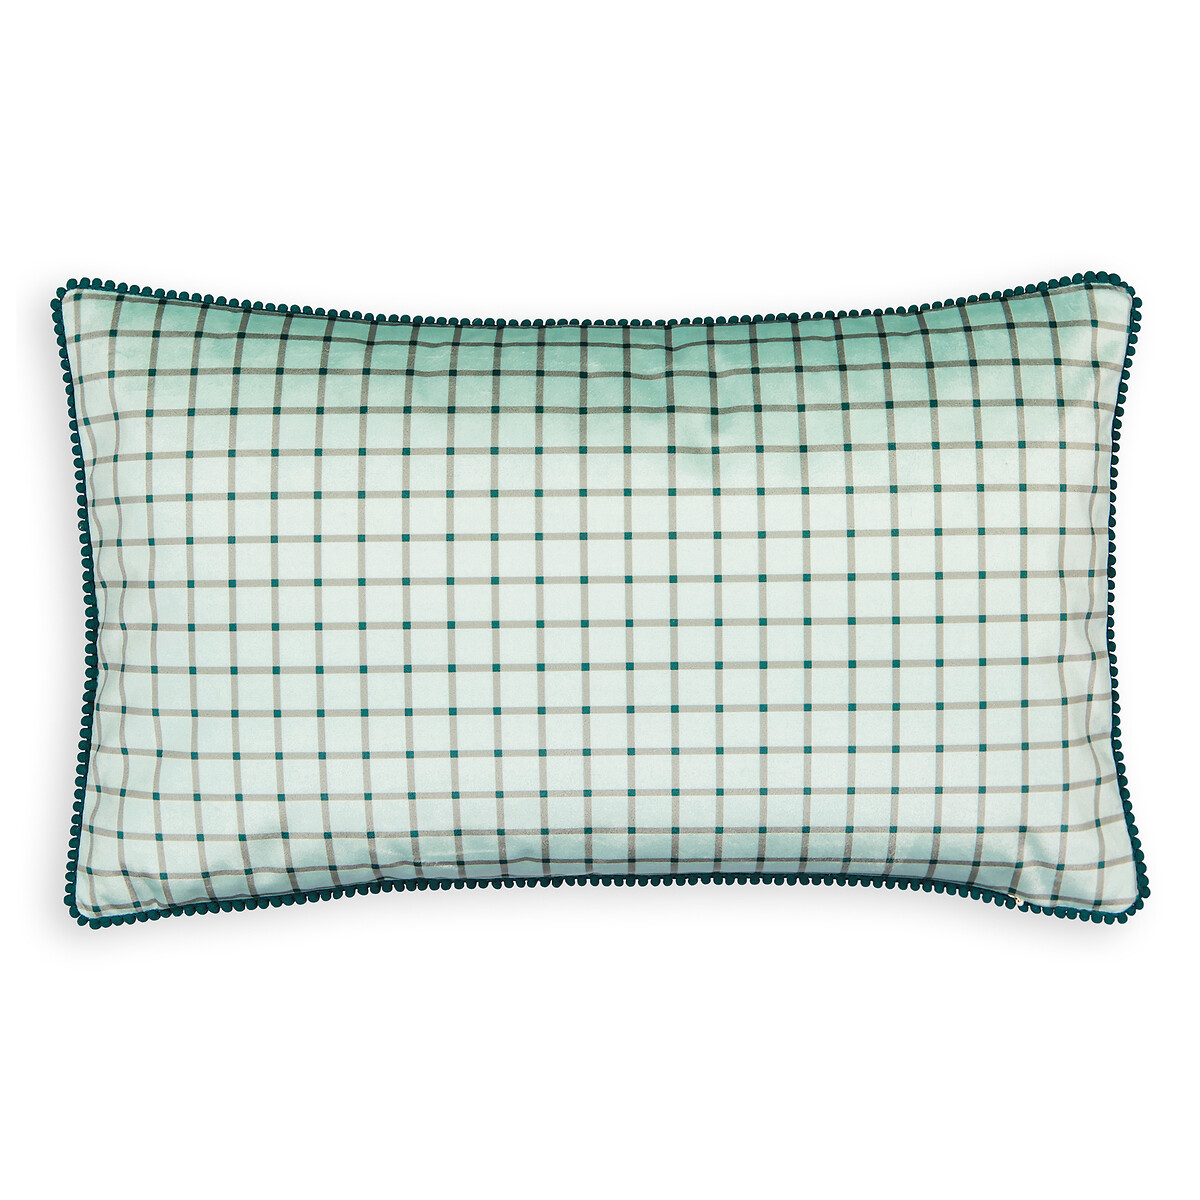 Чехол На подушку прямоугольный Firya 50 x 30 см зеленый LaRedoute, размер 50 x 30 см - фото 2